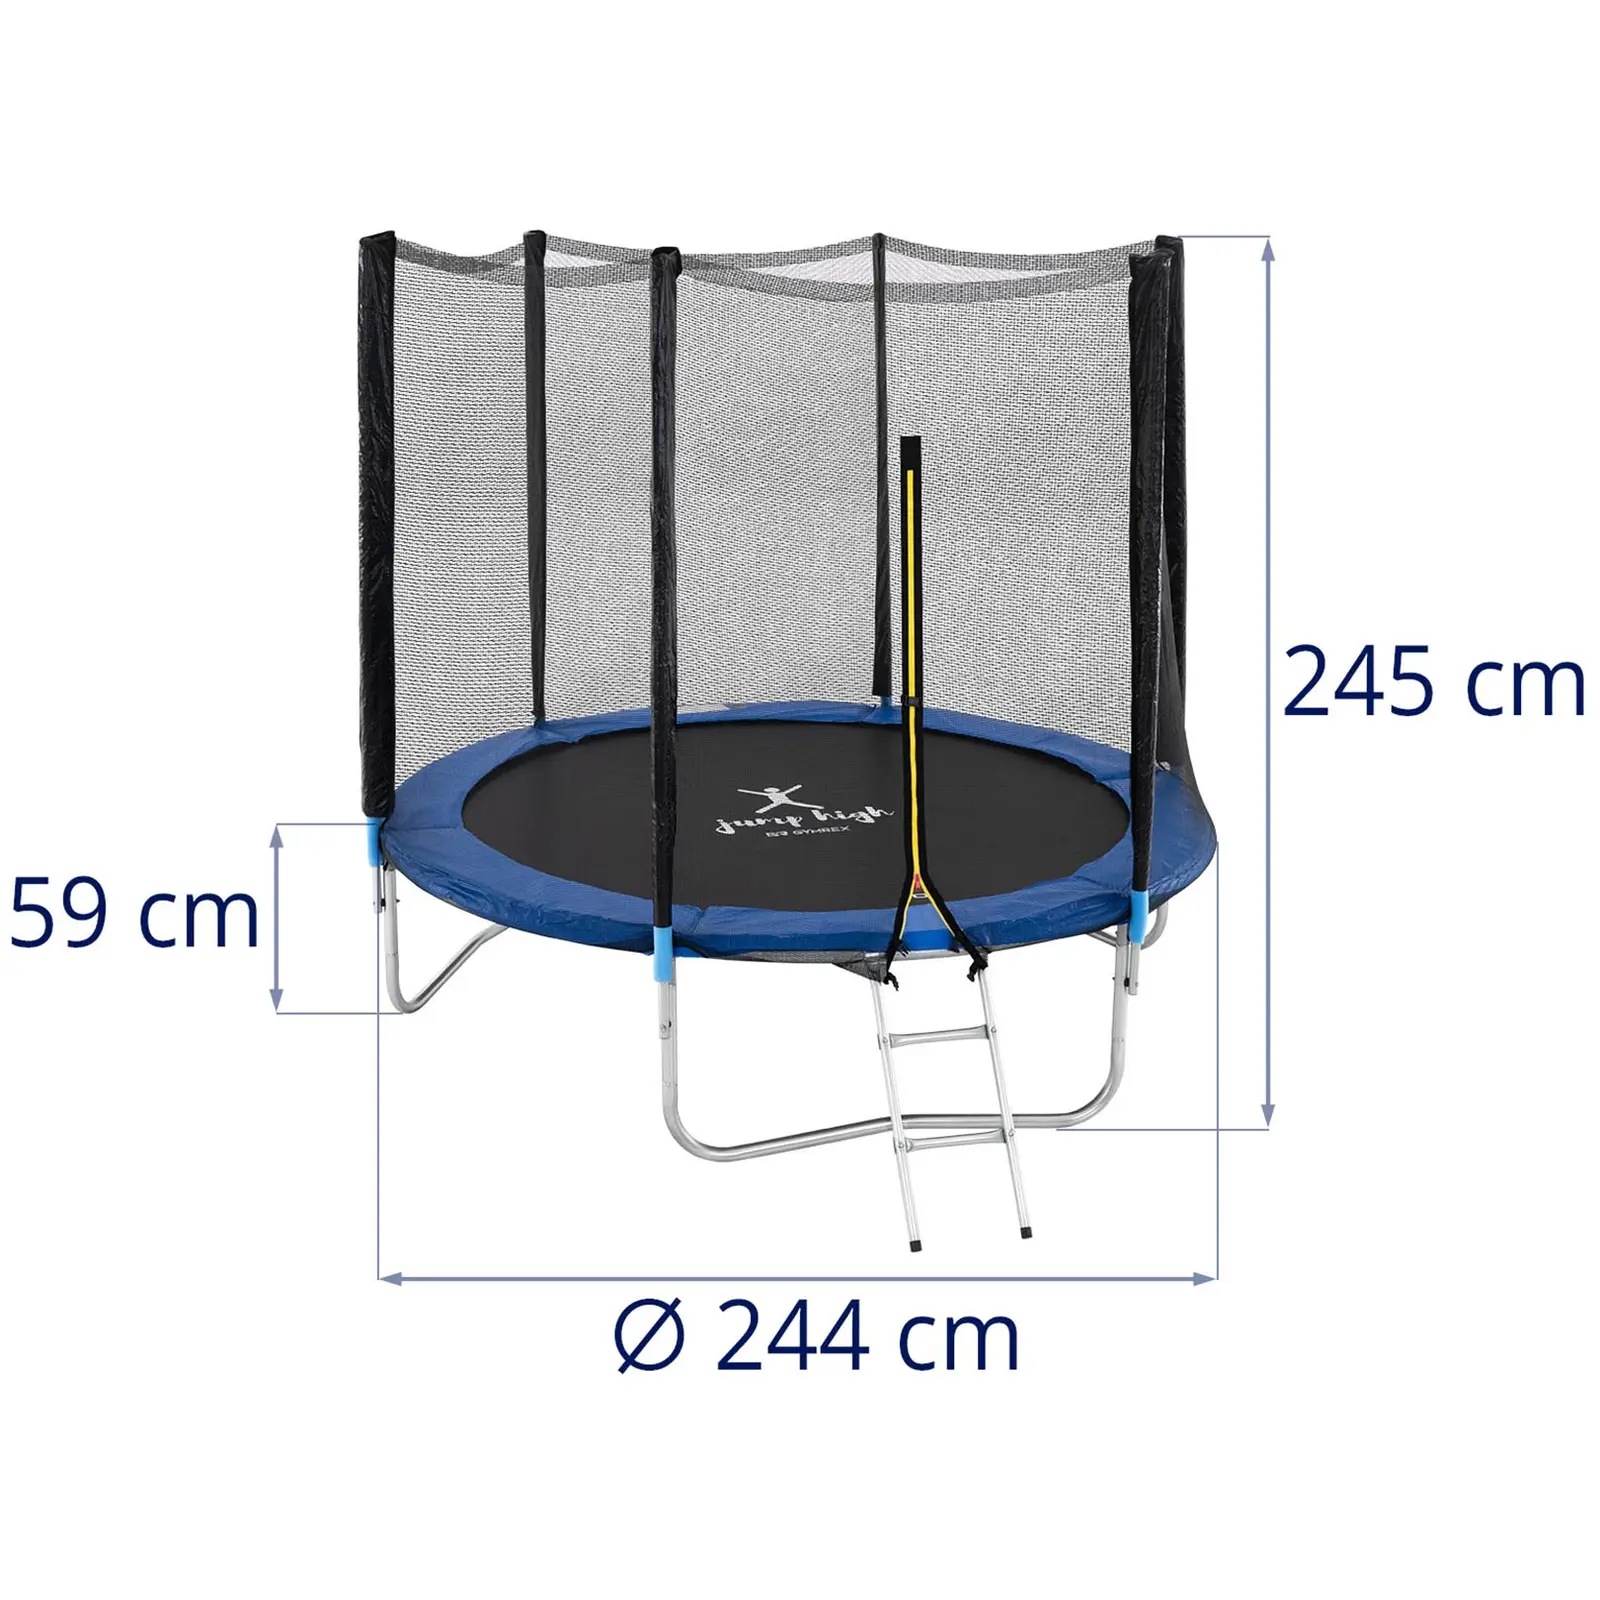 Trampolin med net - 244 cm i diameter - 80 kg - sort/blå